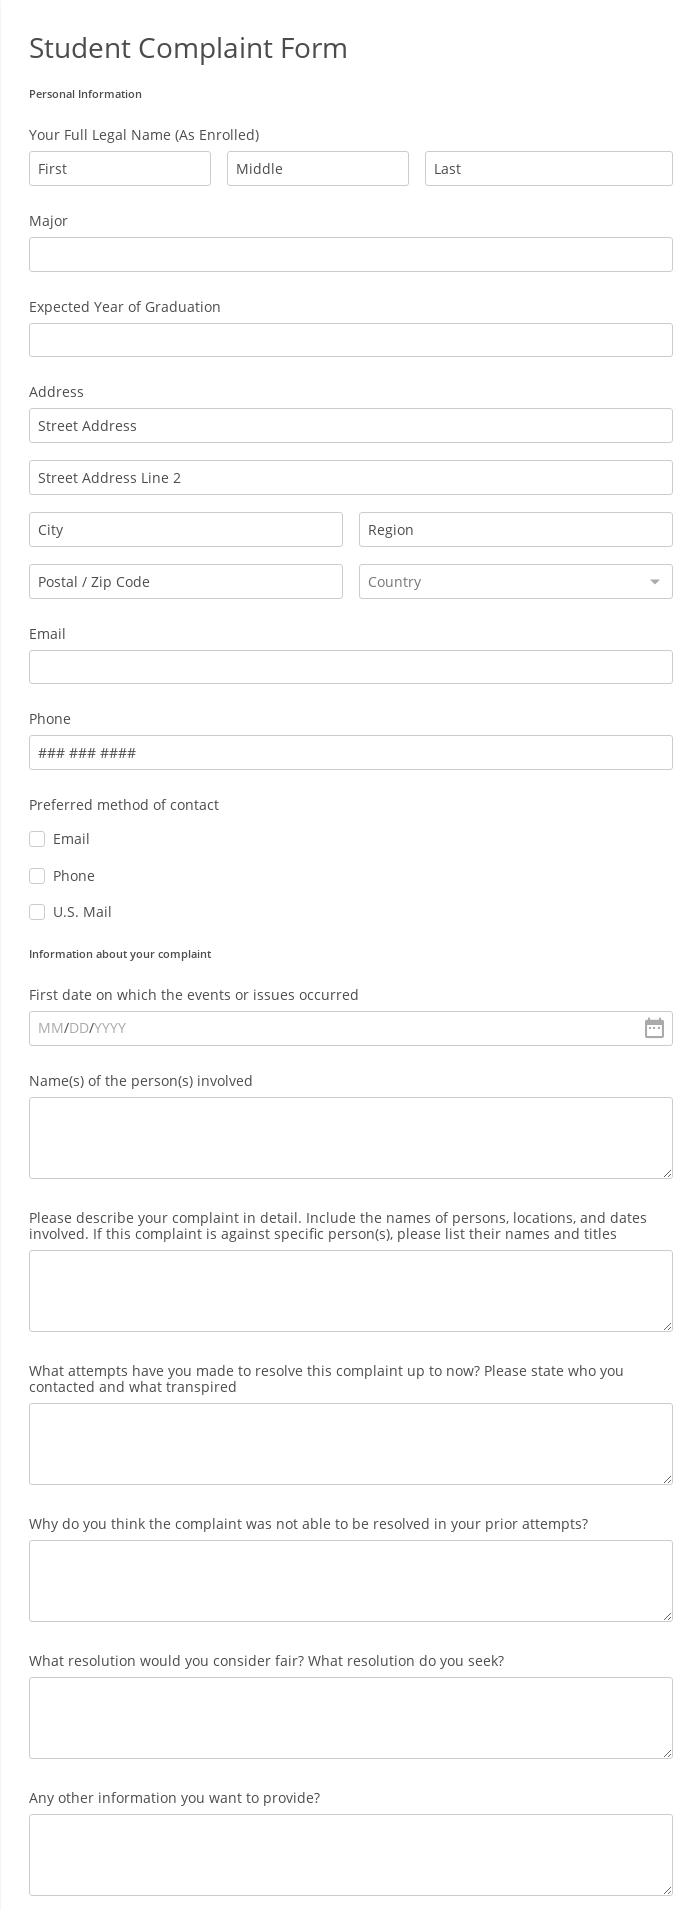 Student Complaint Form